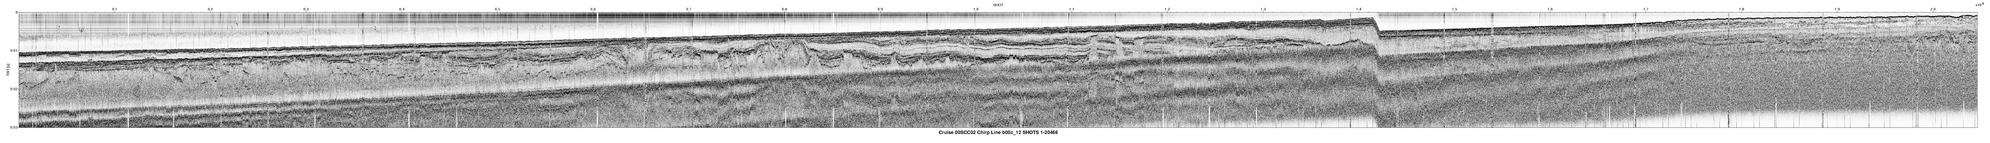 00SCC02 b00c_12 seismic profile image